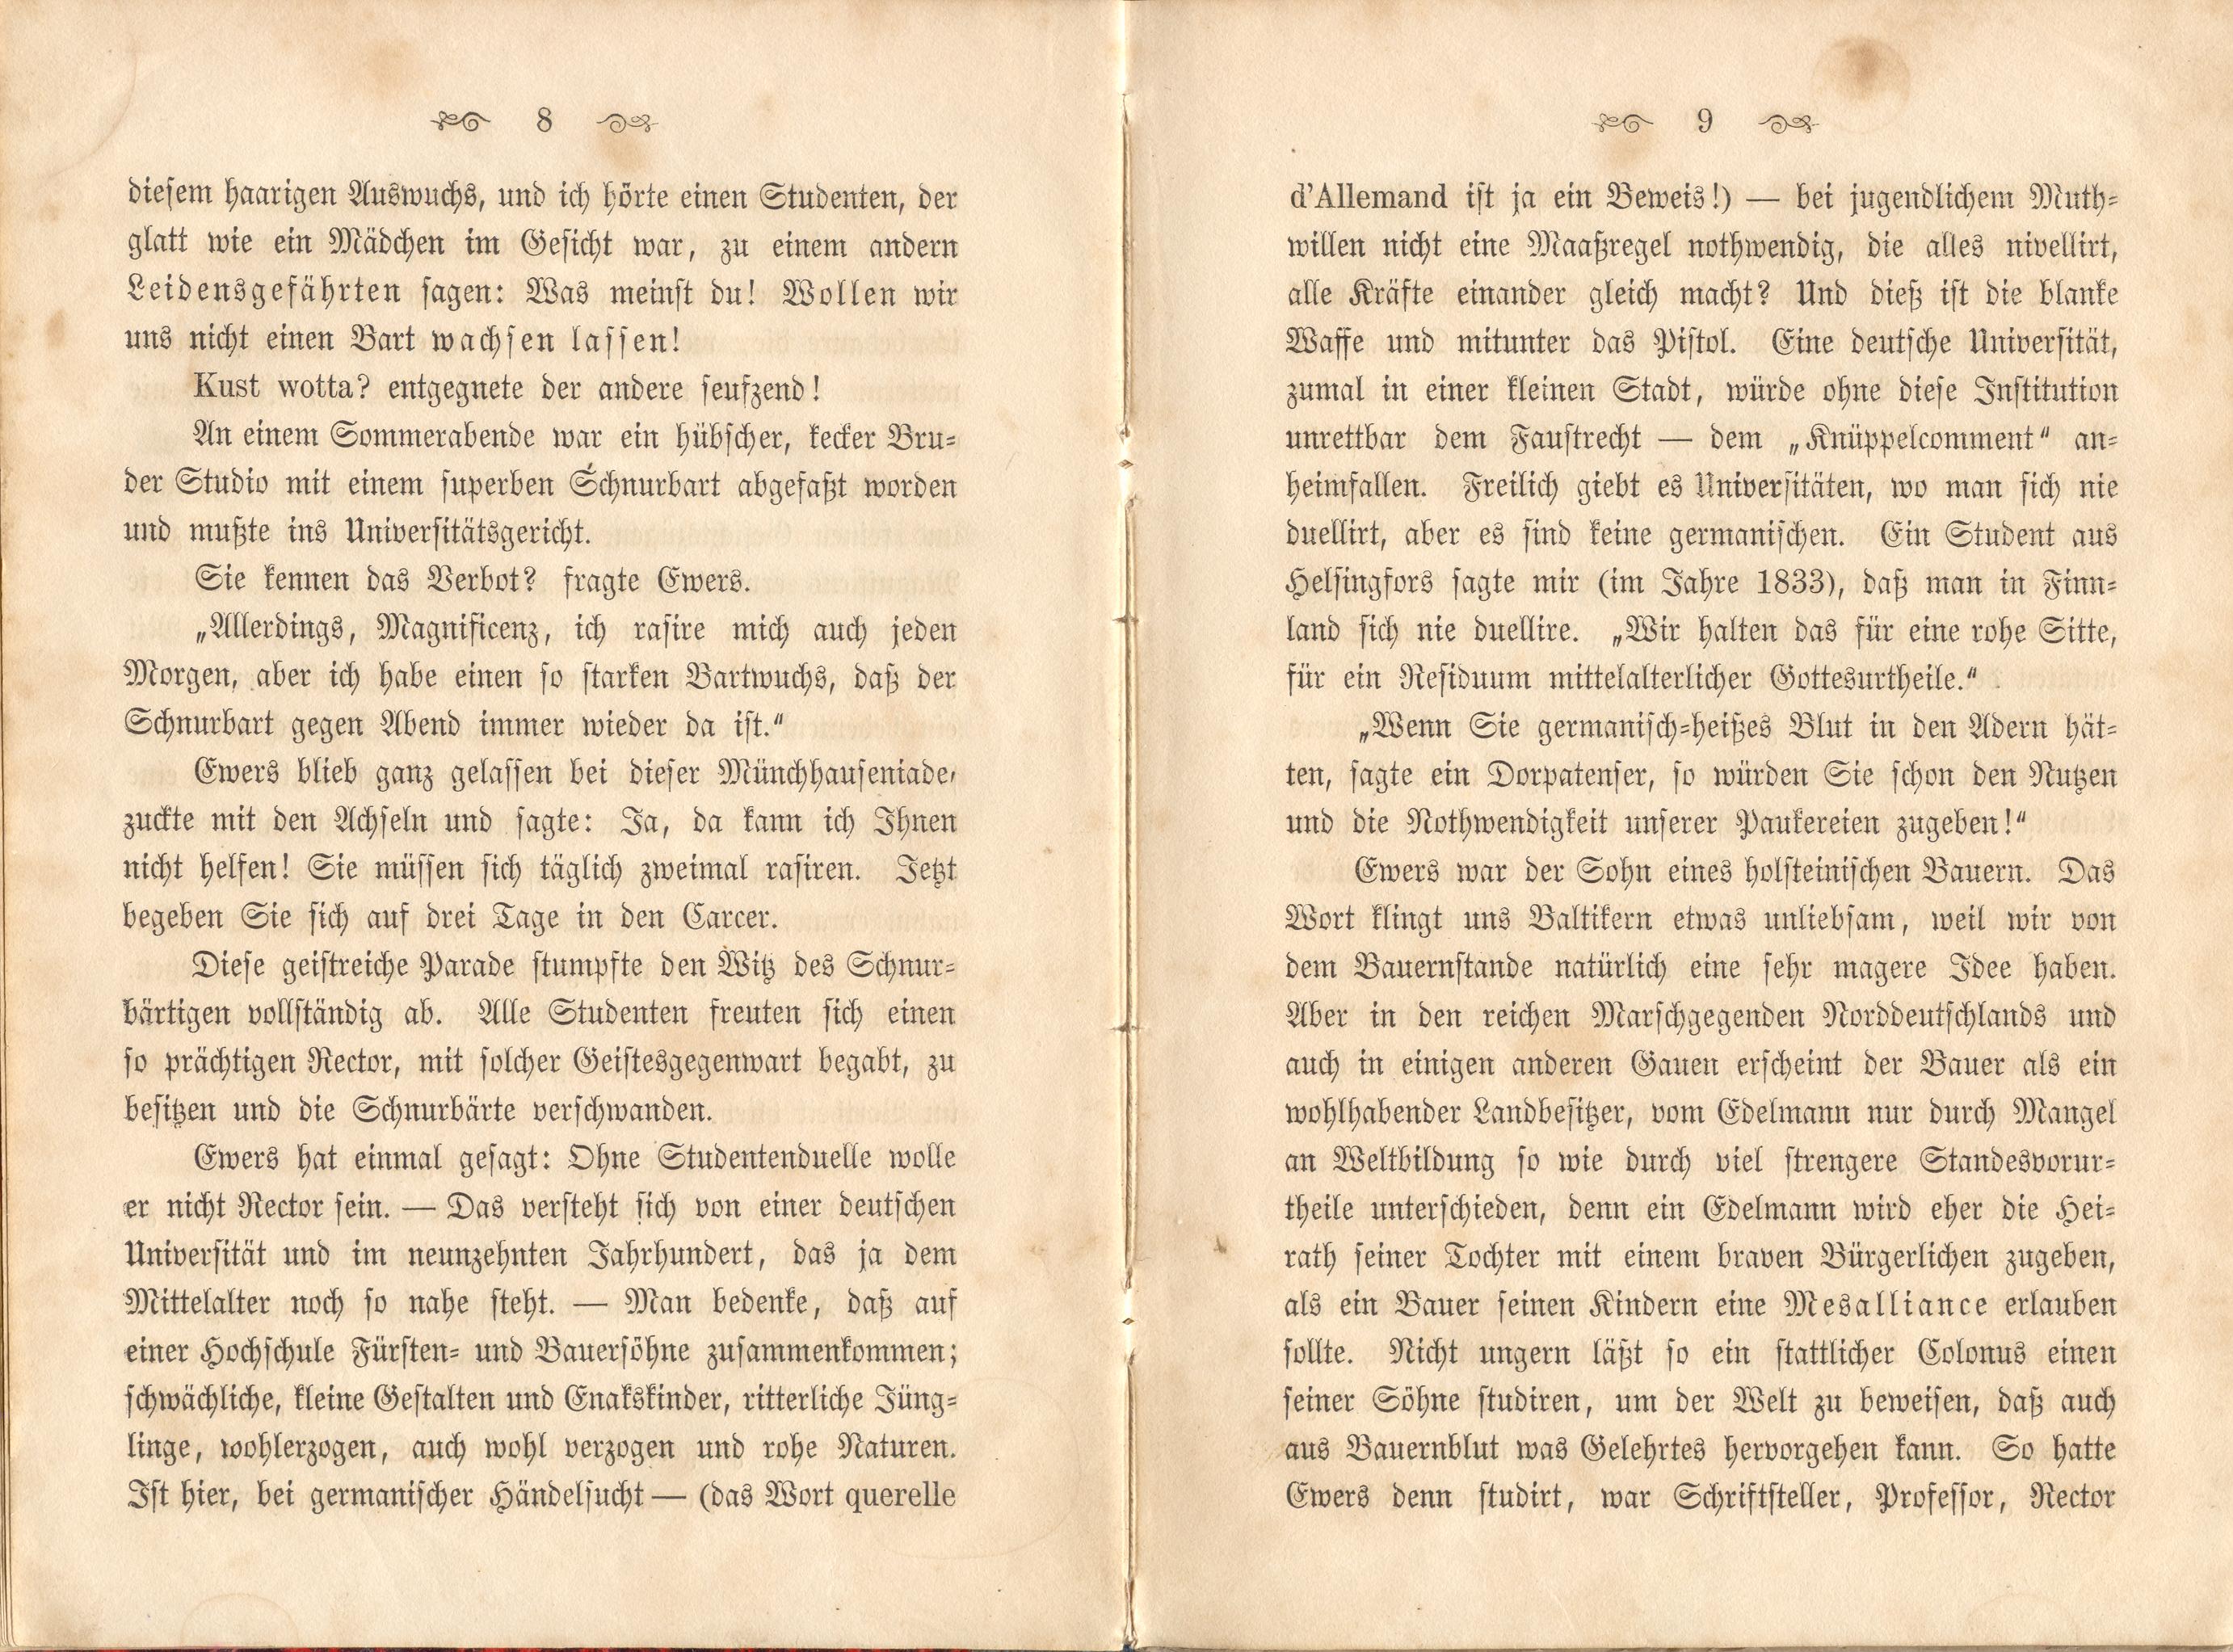 Dorpats Grössen und Typen (1868) | 7. (8-9) Main body of text